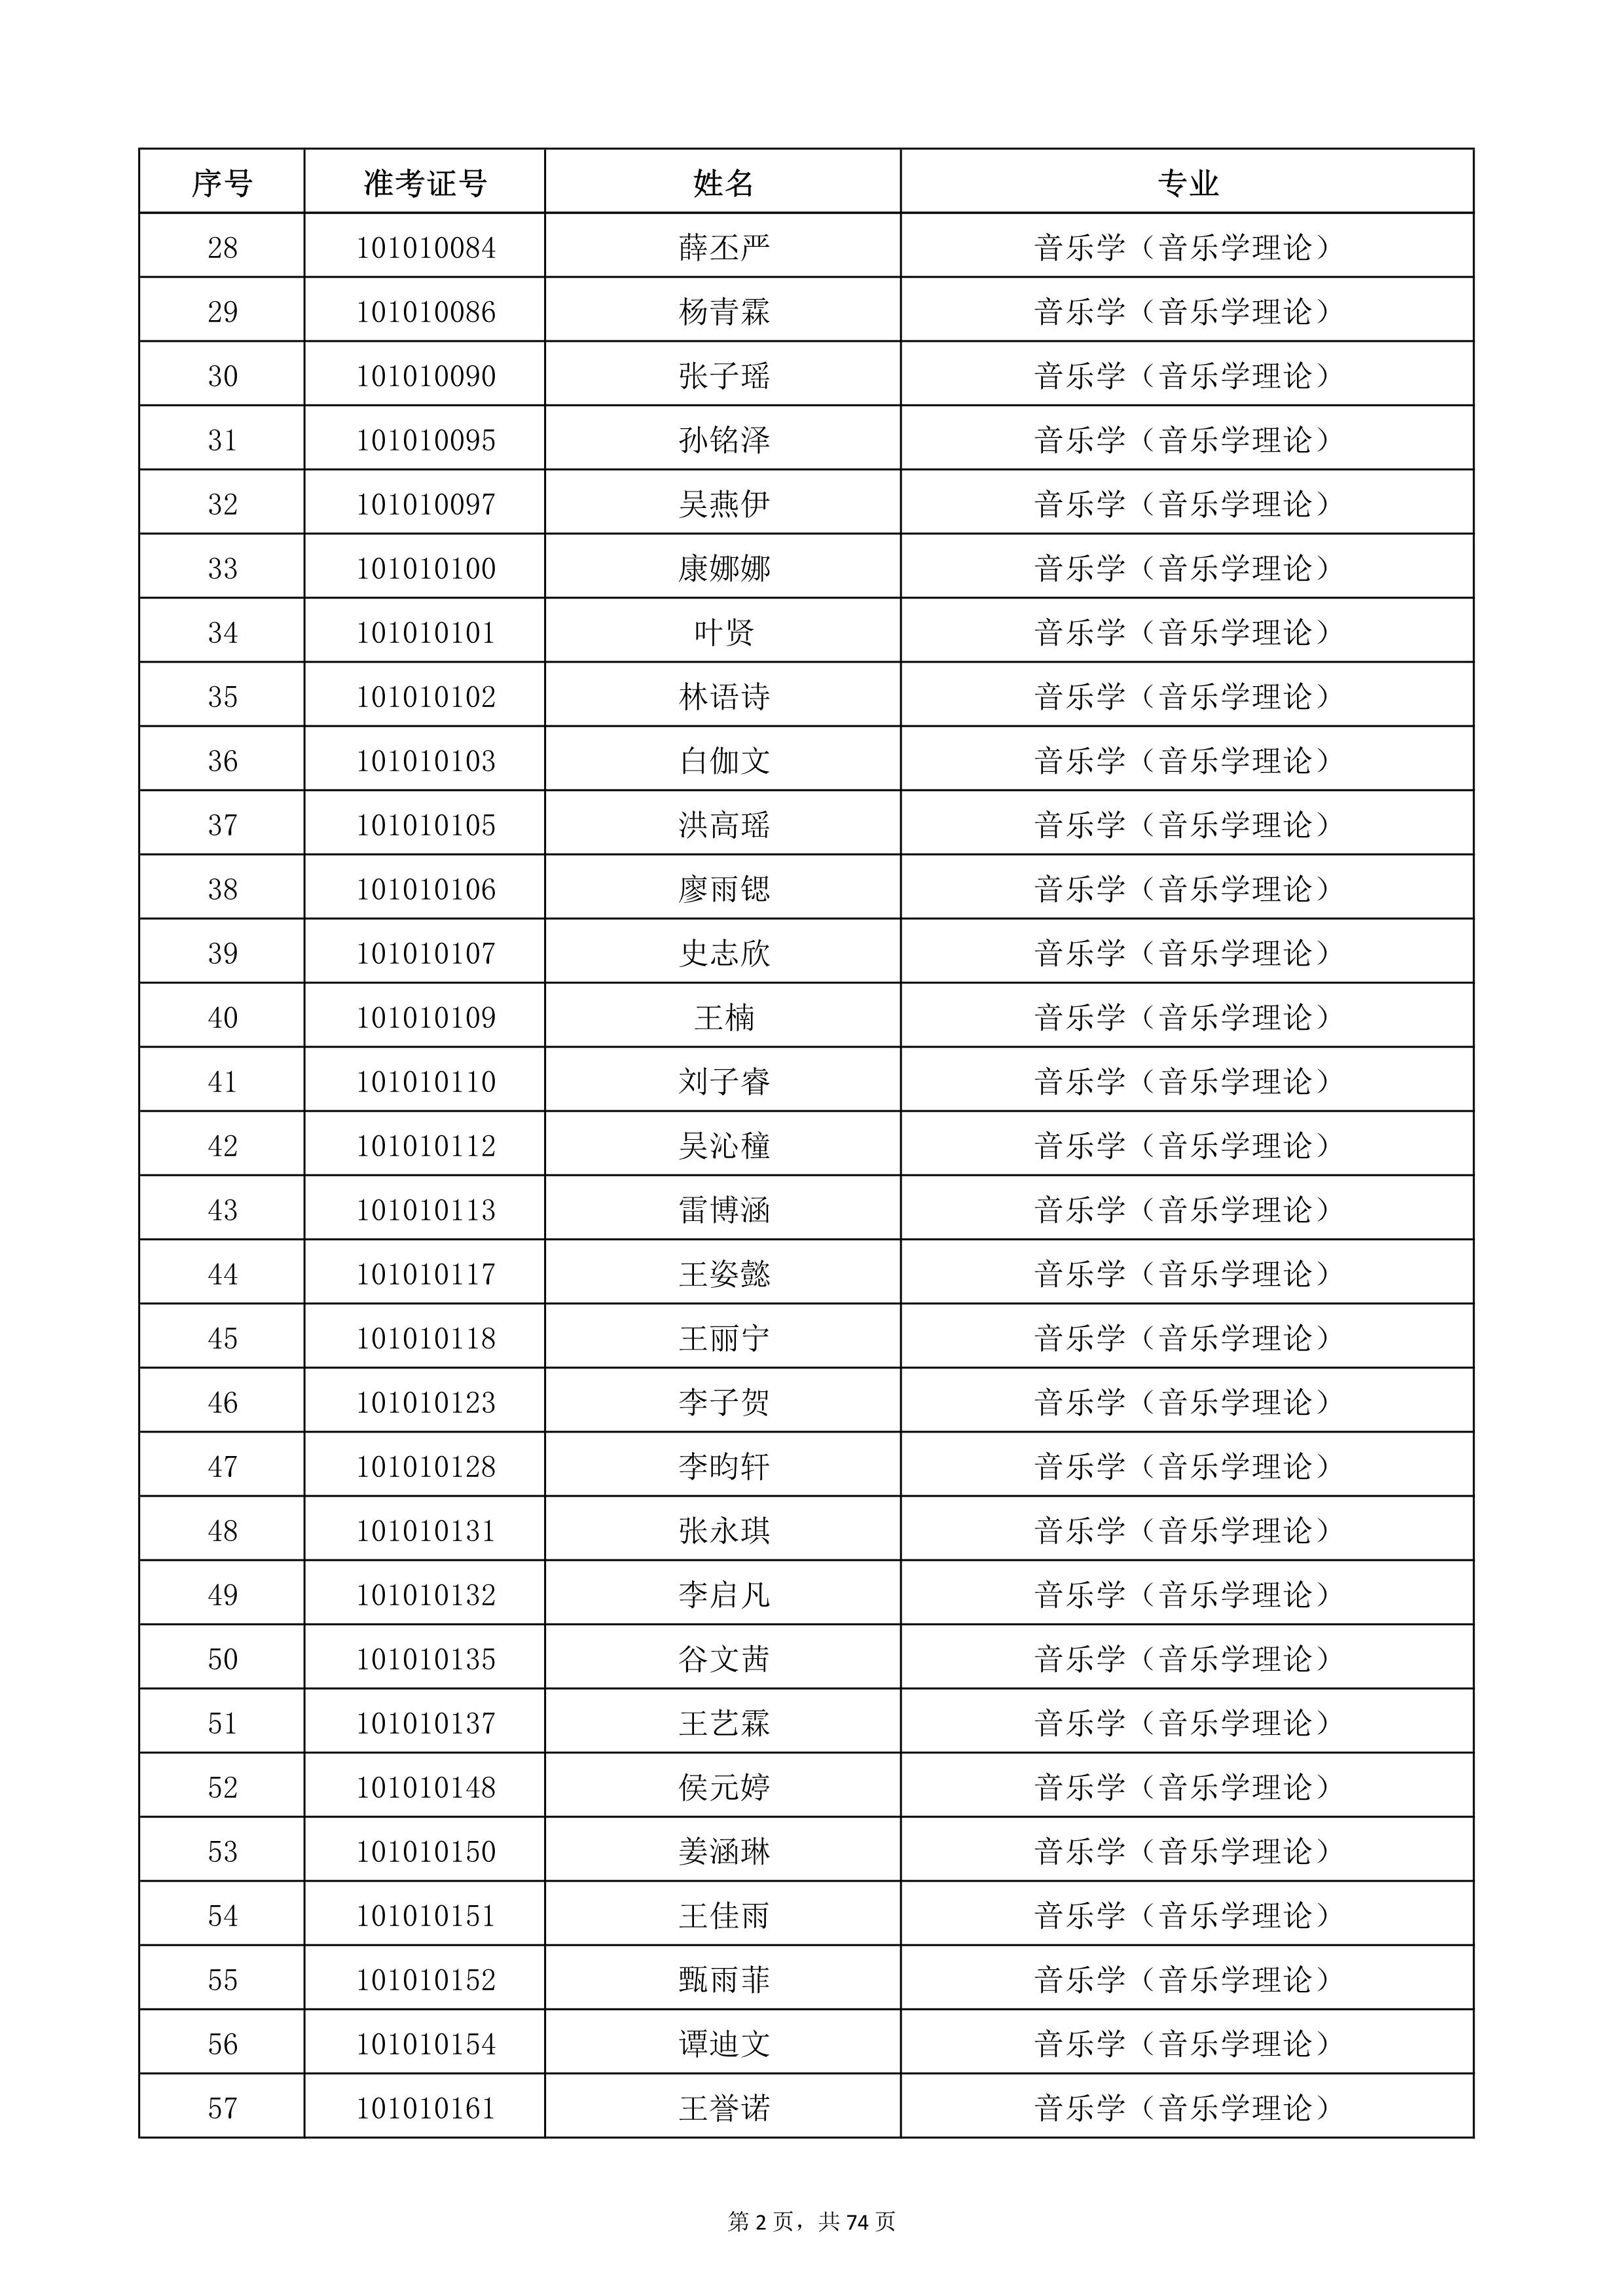 天津音乐学院2022年本科招生考试复试名单_2.jpg